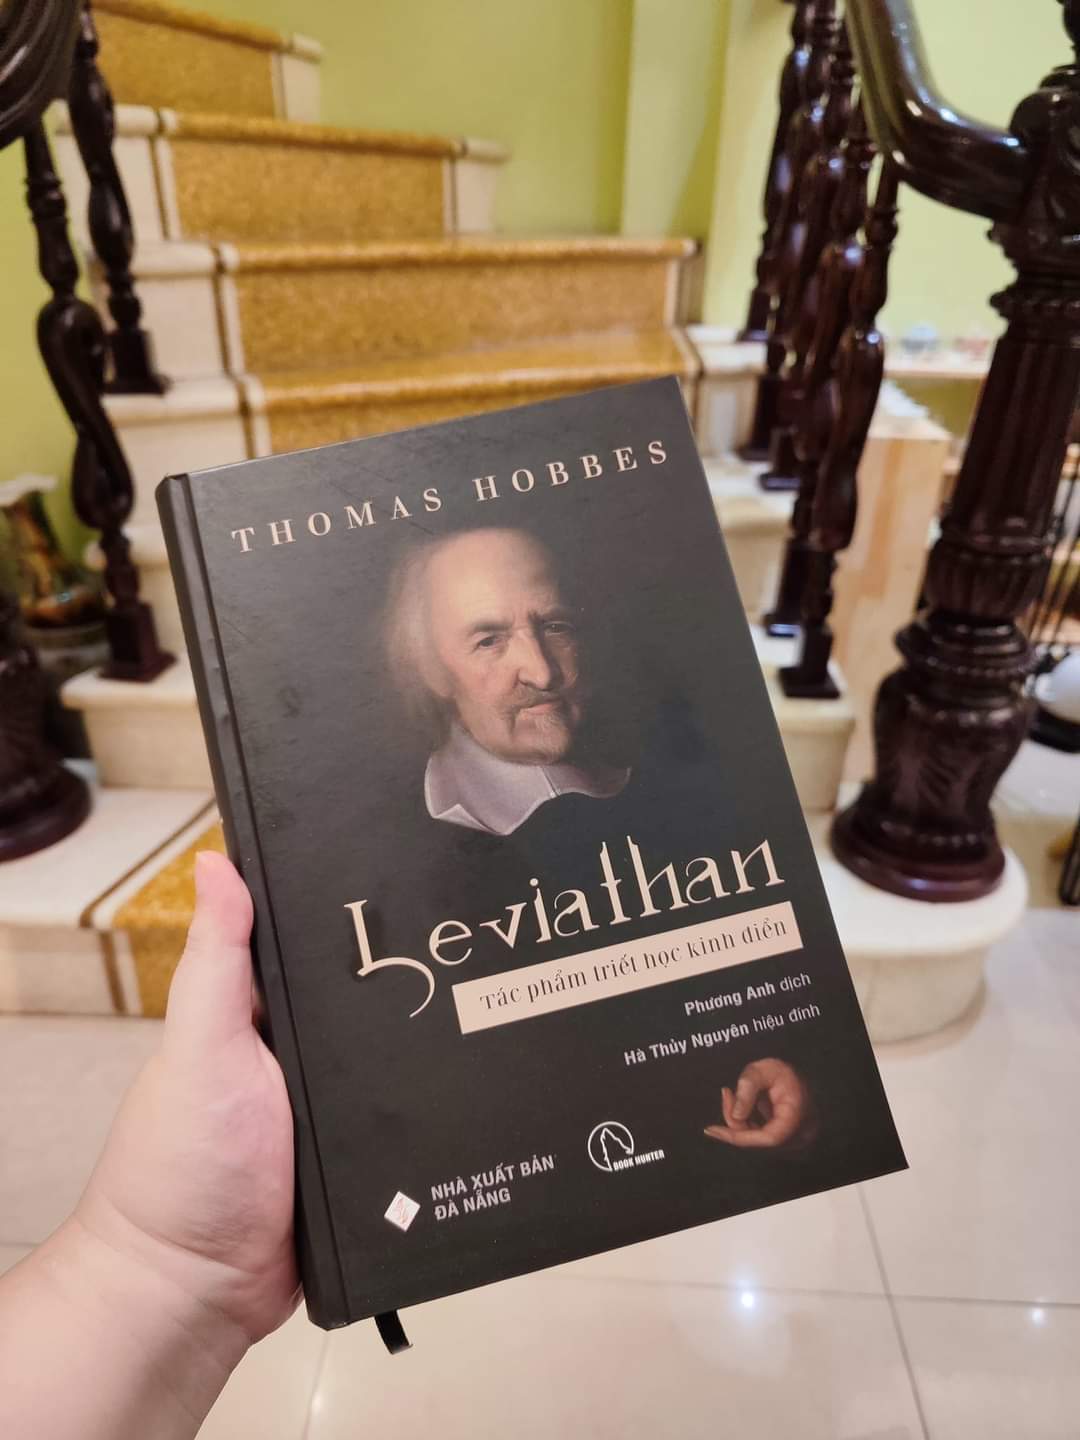 LEVIATHAN – Tác phẩm triết học kinh điển của Thomas Hobbes - Nguyễn Phương Anh dịch – Book Hunter